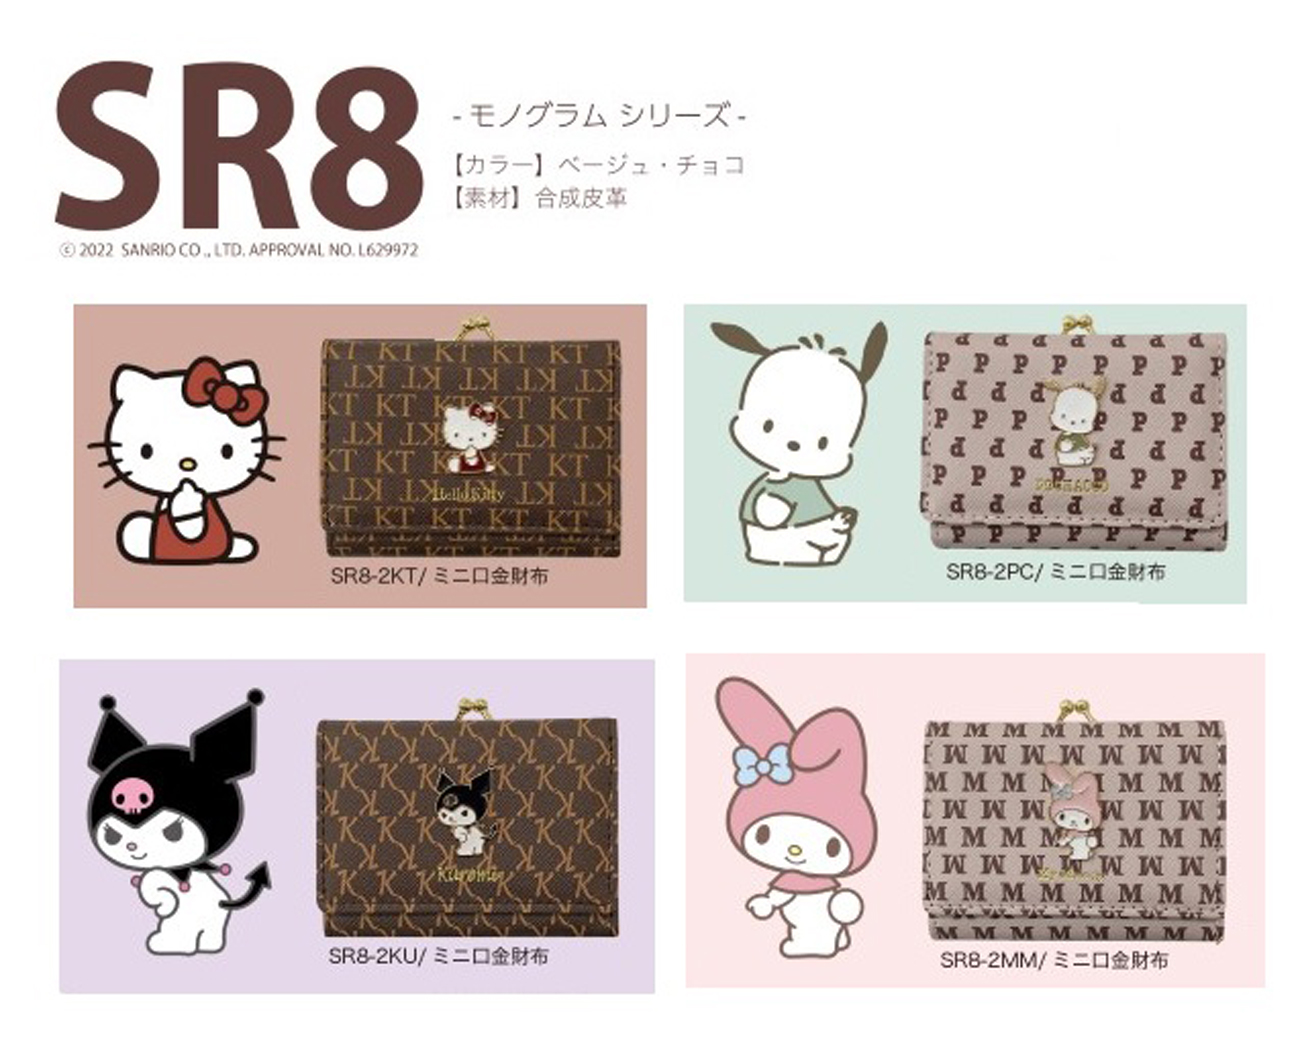 サンリオキャラクター SR8 モノグラムシリーズ　ミニ口金財布